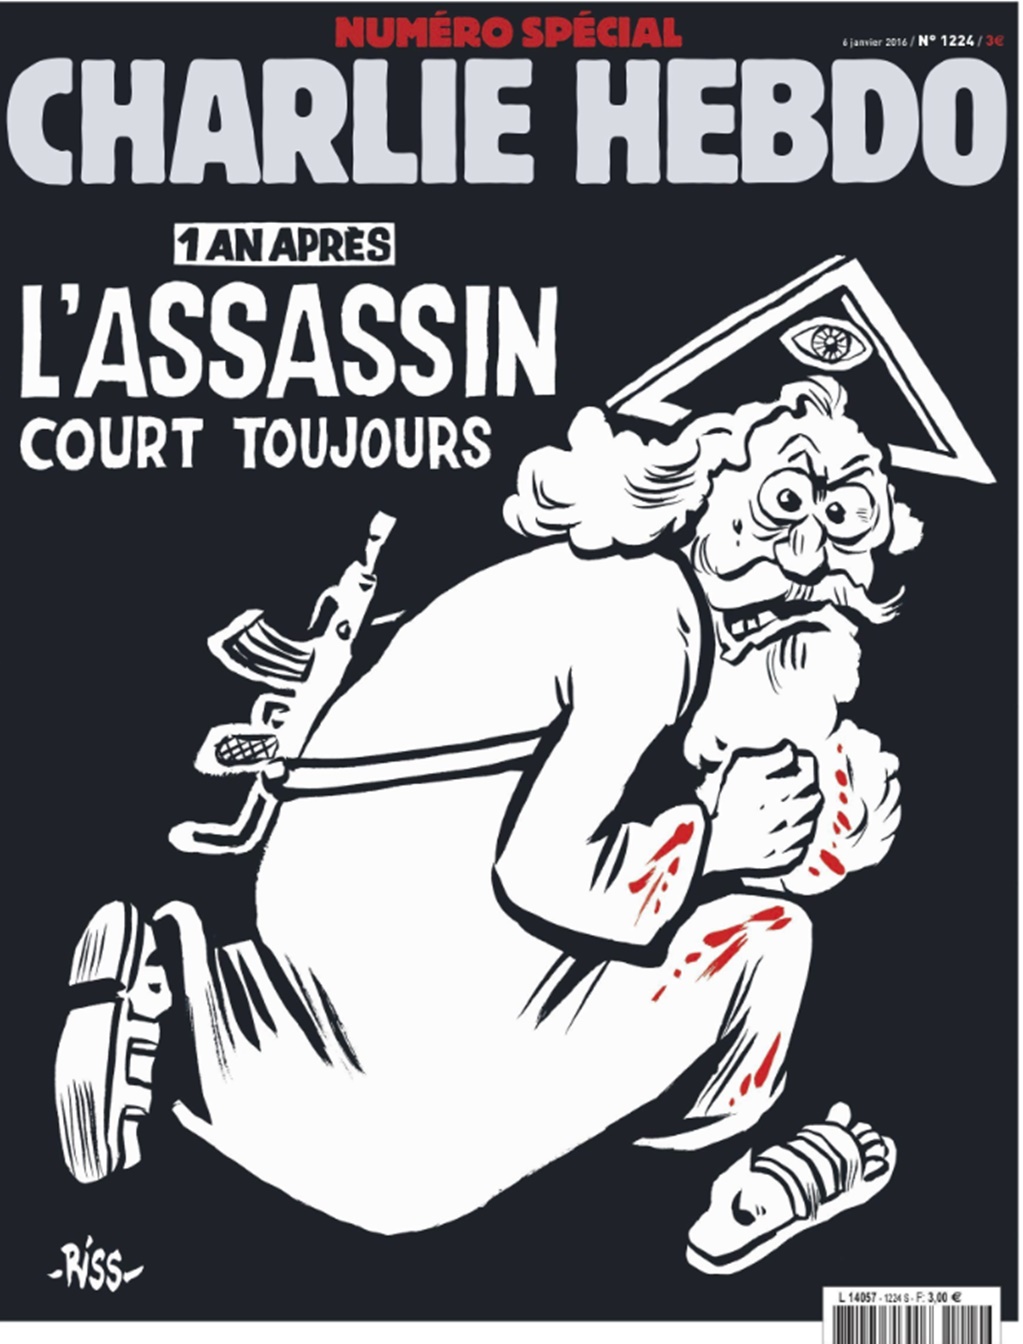 Publican número especial de Charlie Hebdo en aniversario de atentados